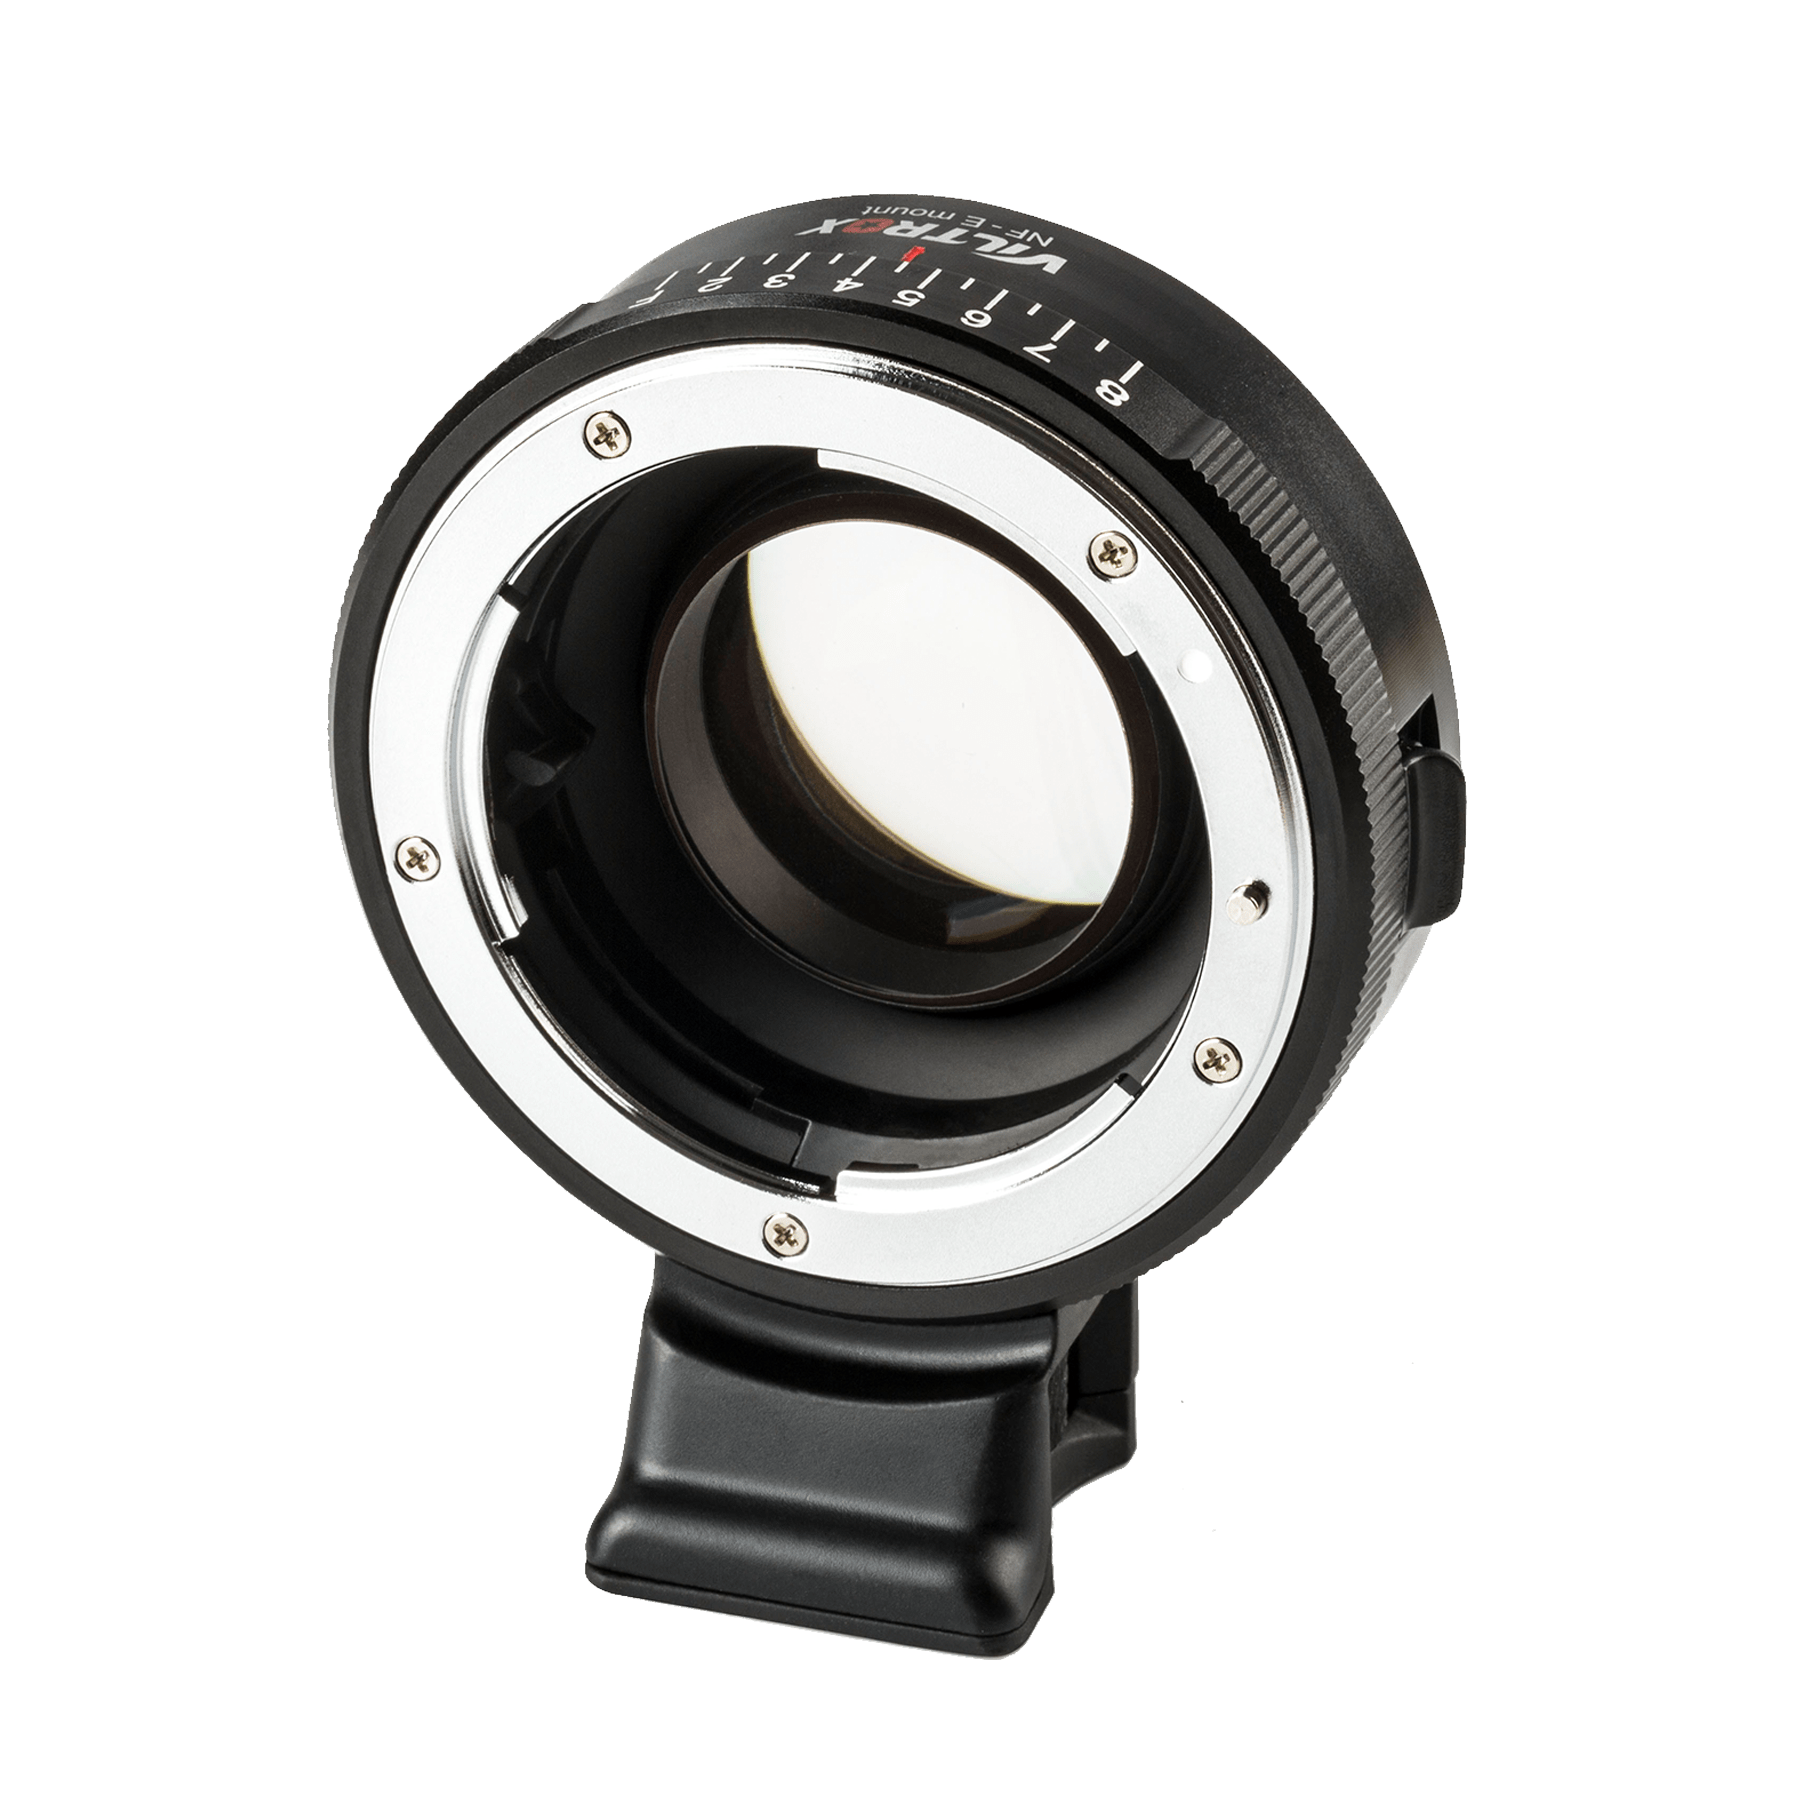 Rollei Objektive Viltrox NF-E Speedbooster für Nikon F-Objektive an Sony E-Mount